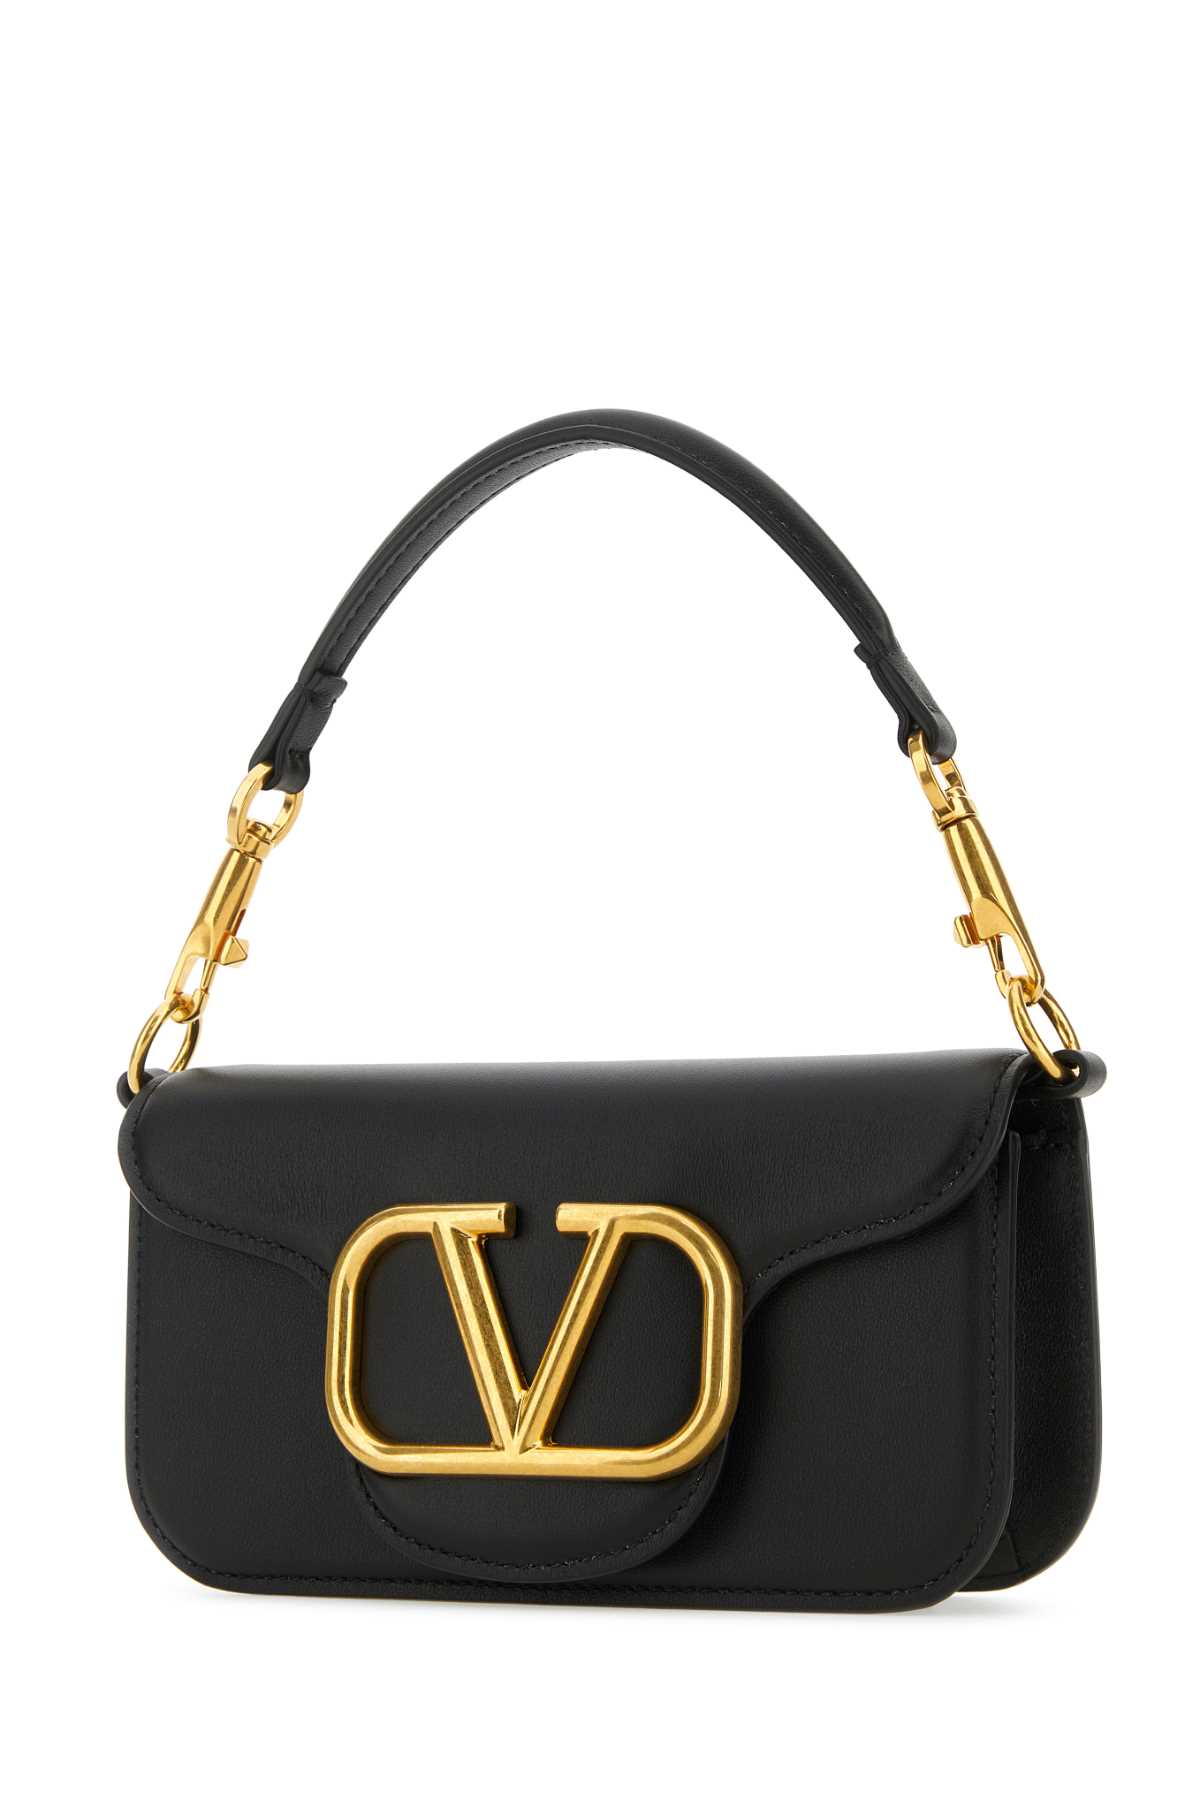 Valentino Garavani Black Leather Small Locã² Handbag In Nero